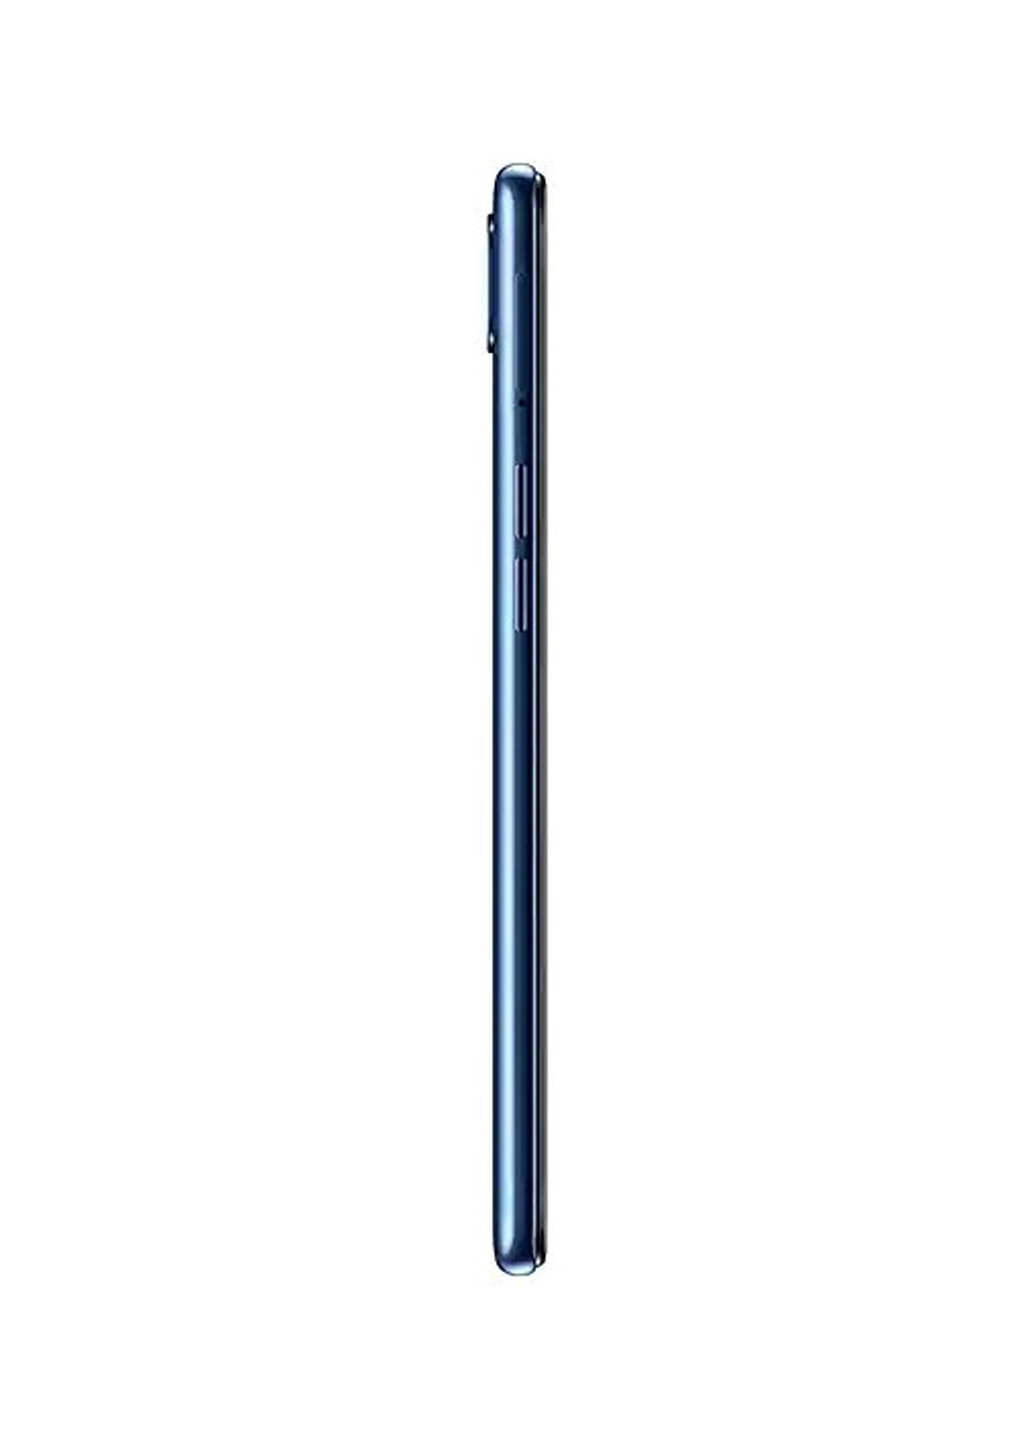 Смартфон Galaxy A10s 2 / 32GB Blue (SM-A107FZBDSEK) Samsung A10s 2/32GB Blue (SM-A107FZBDSEK) синій